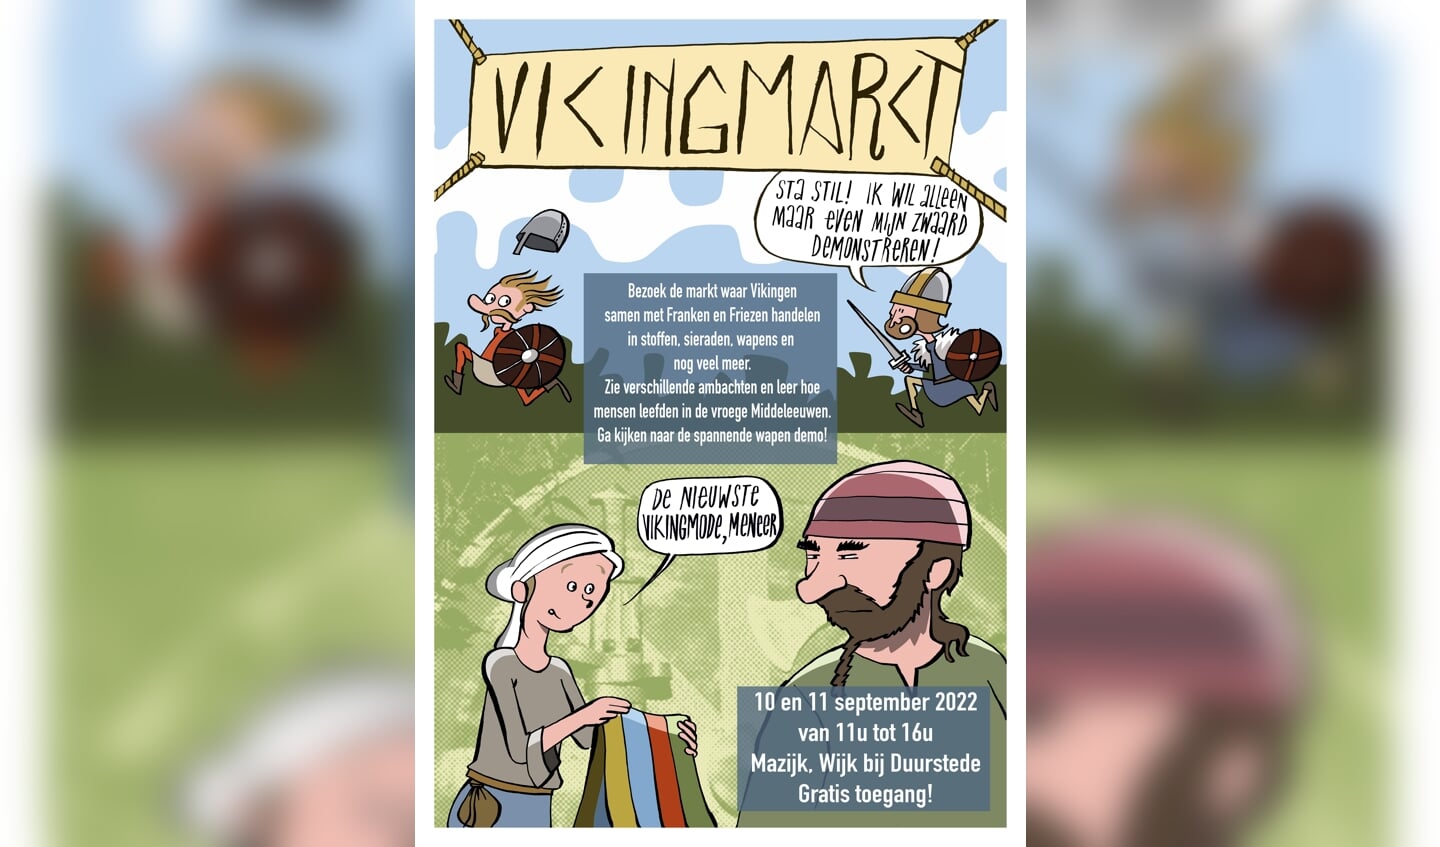 Vikingmarkt op de Mazijk